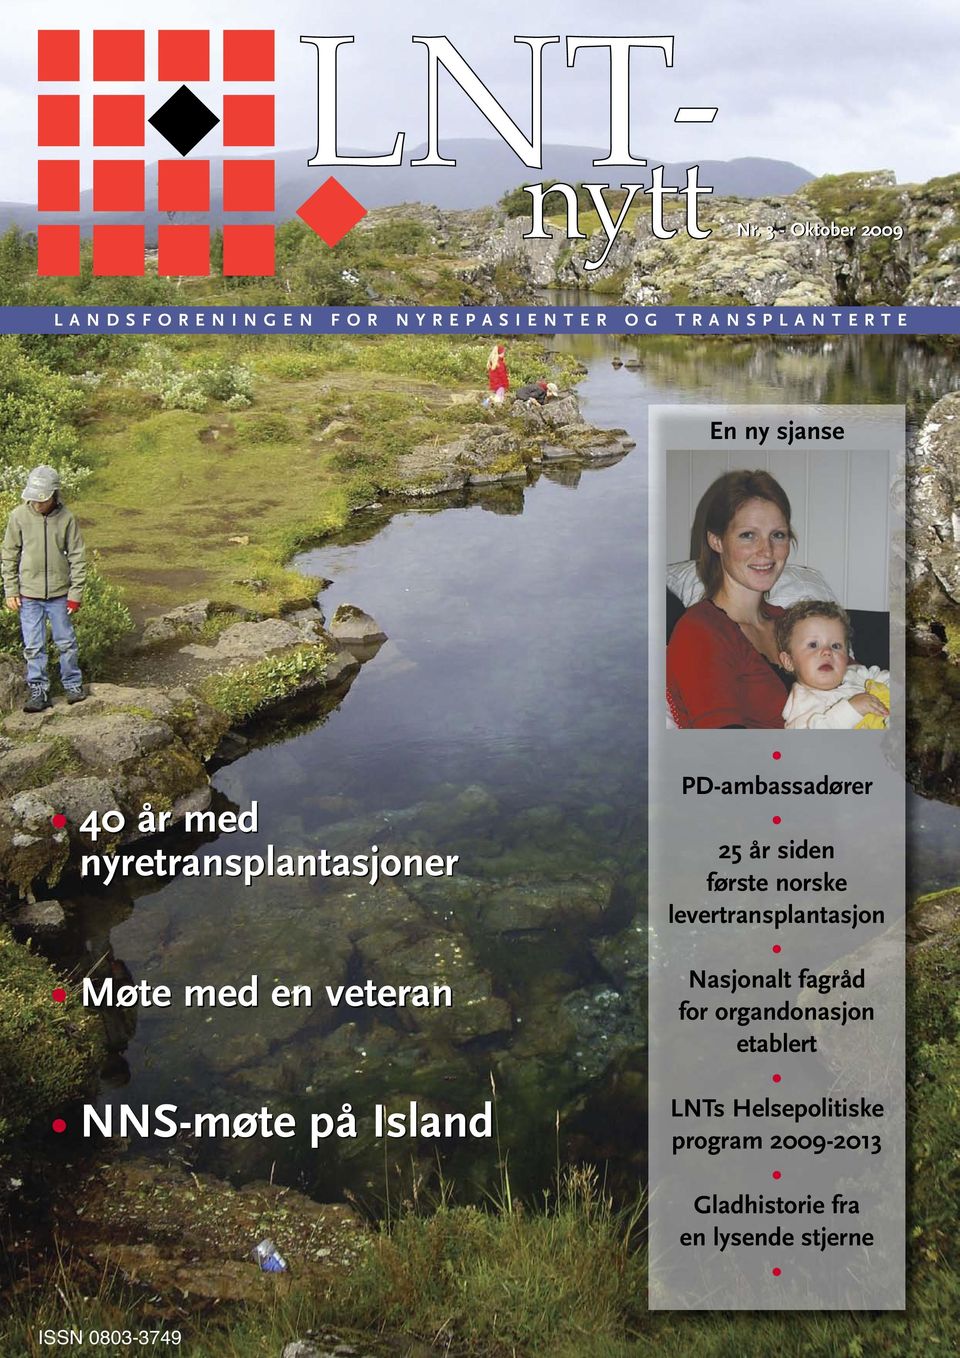 Island PD-ambassadører 25 år siden første norske levertransplantasjon Nasjonalt fagråd for